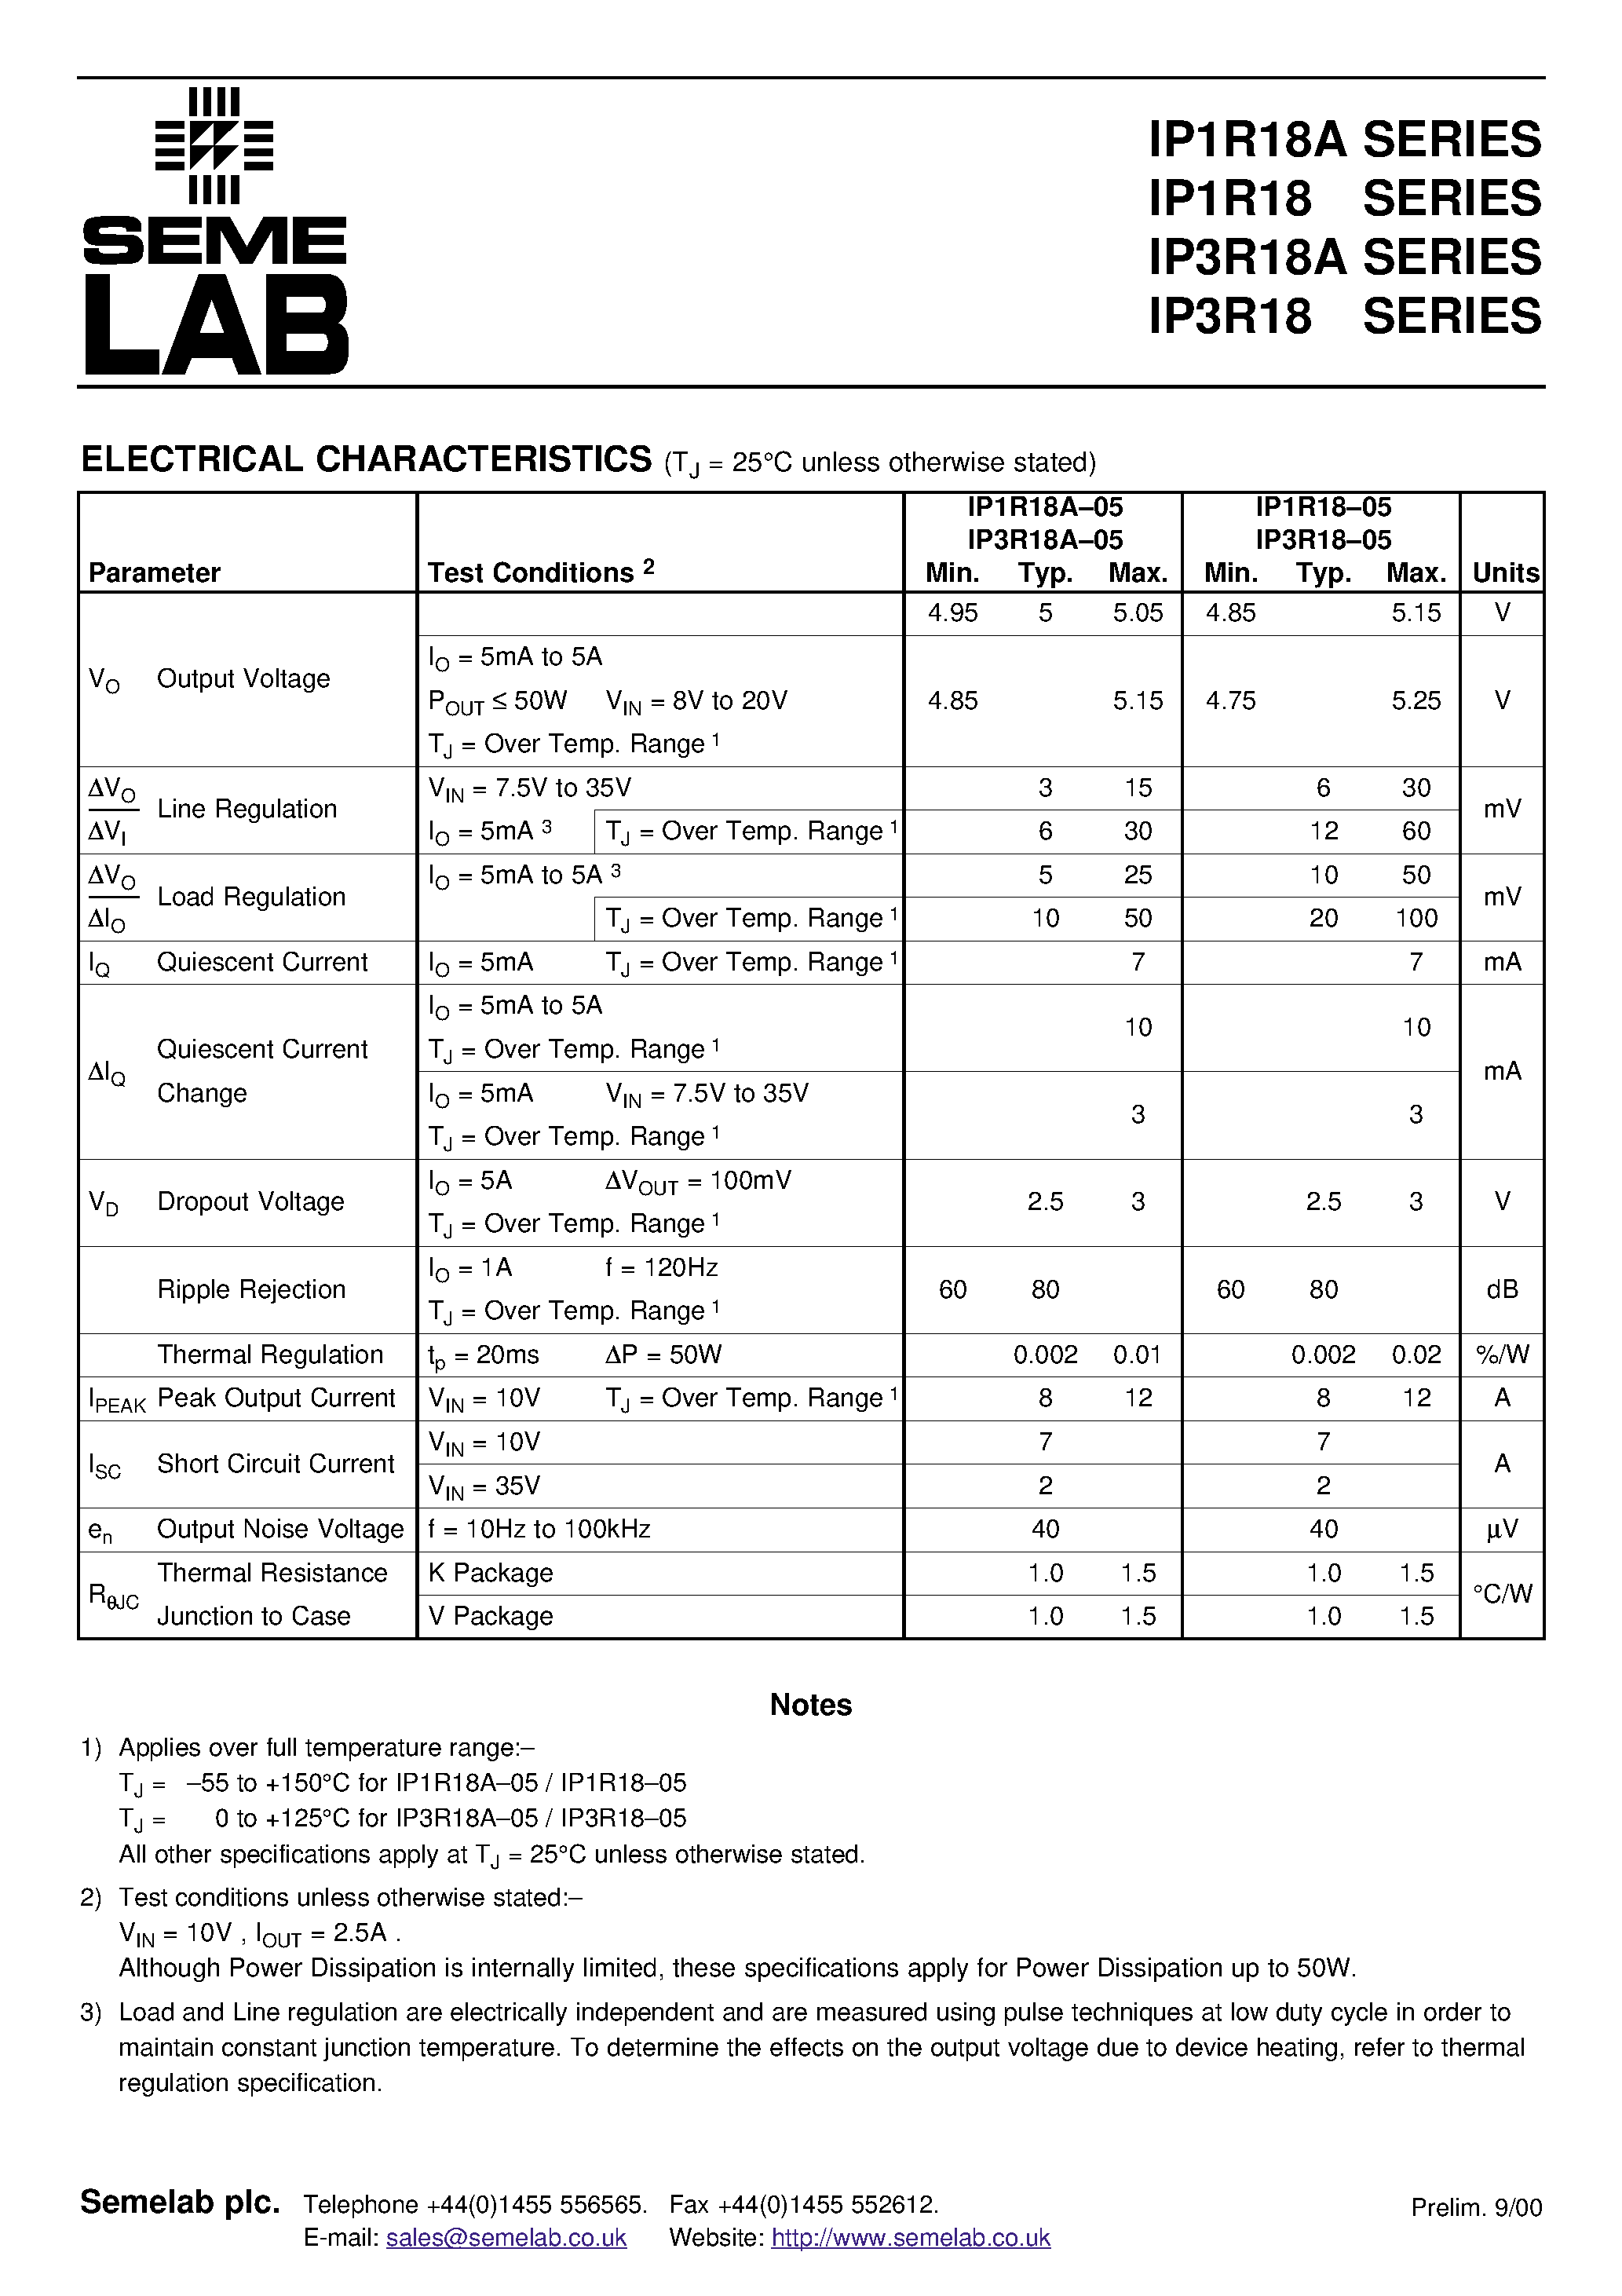 Datasheet IP1R18A12-V - 5 AMP POSITIVE VOLTAGE REGULATORS page 2